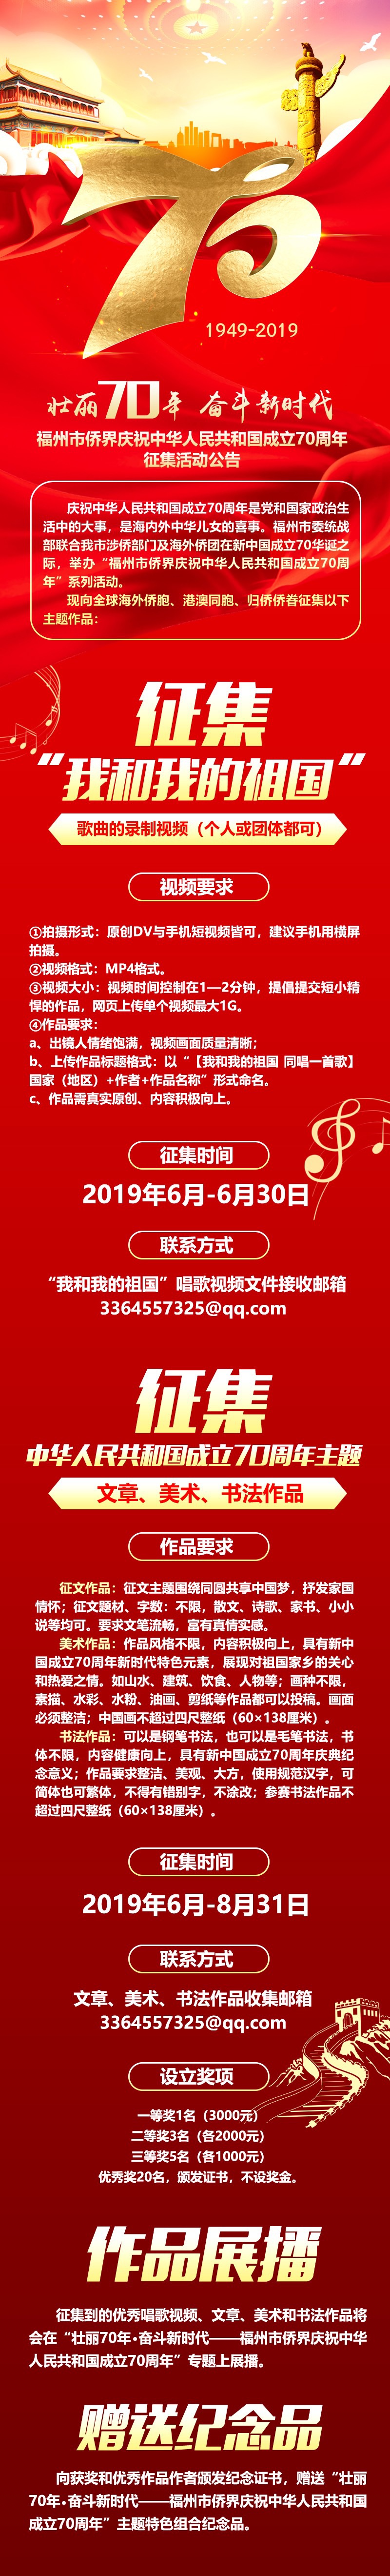 福州市侨界庆祝中华人民共和国成立70周年征集活动公告